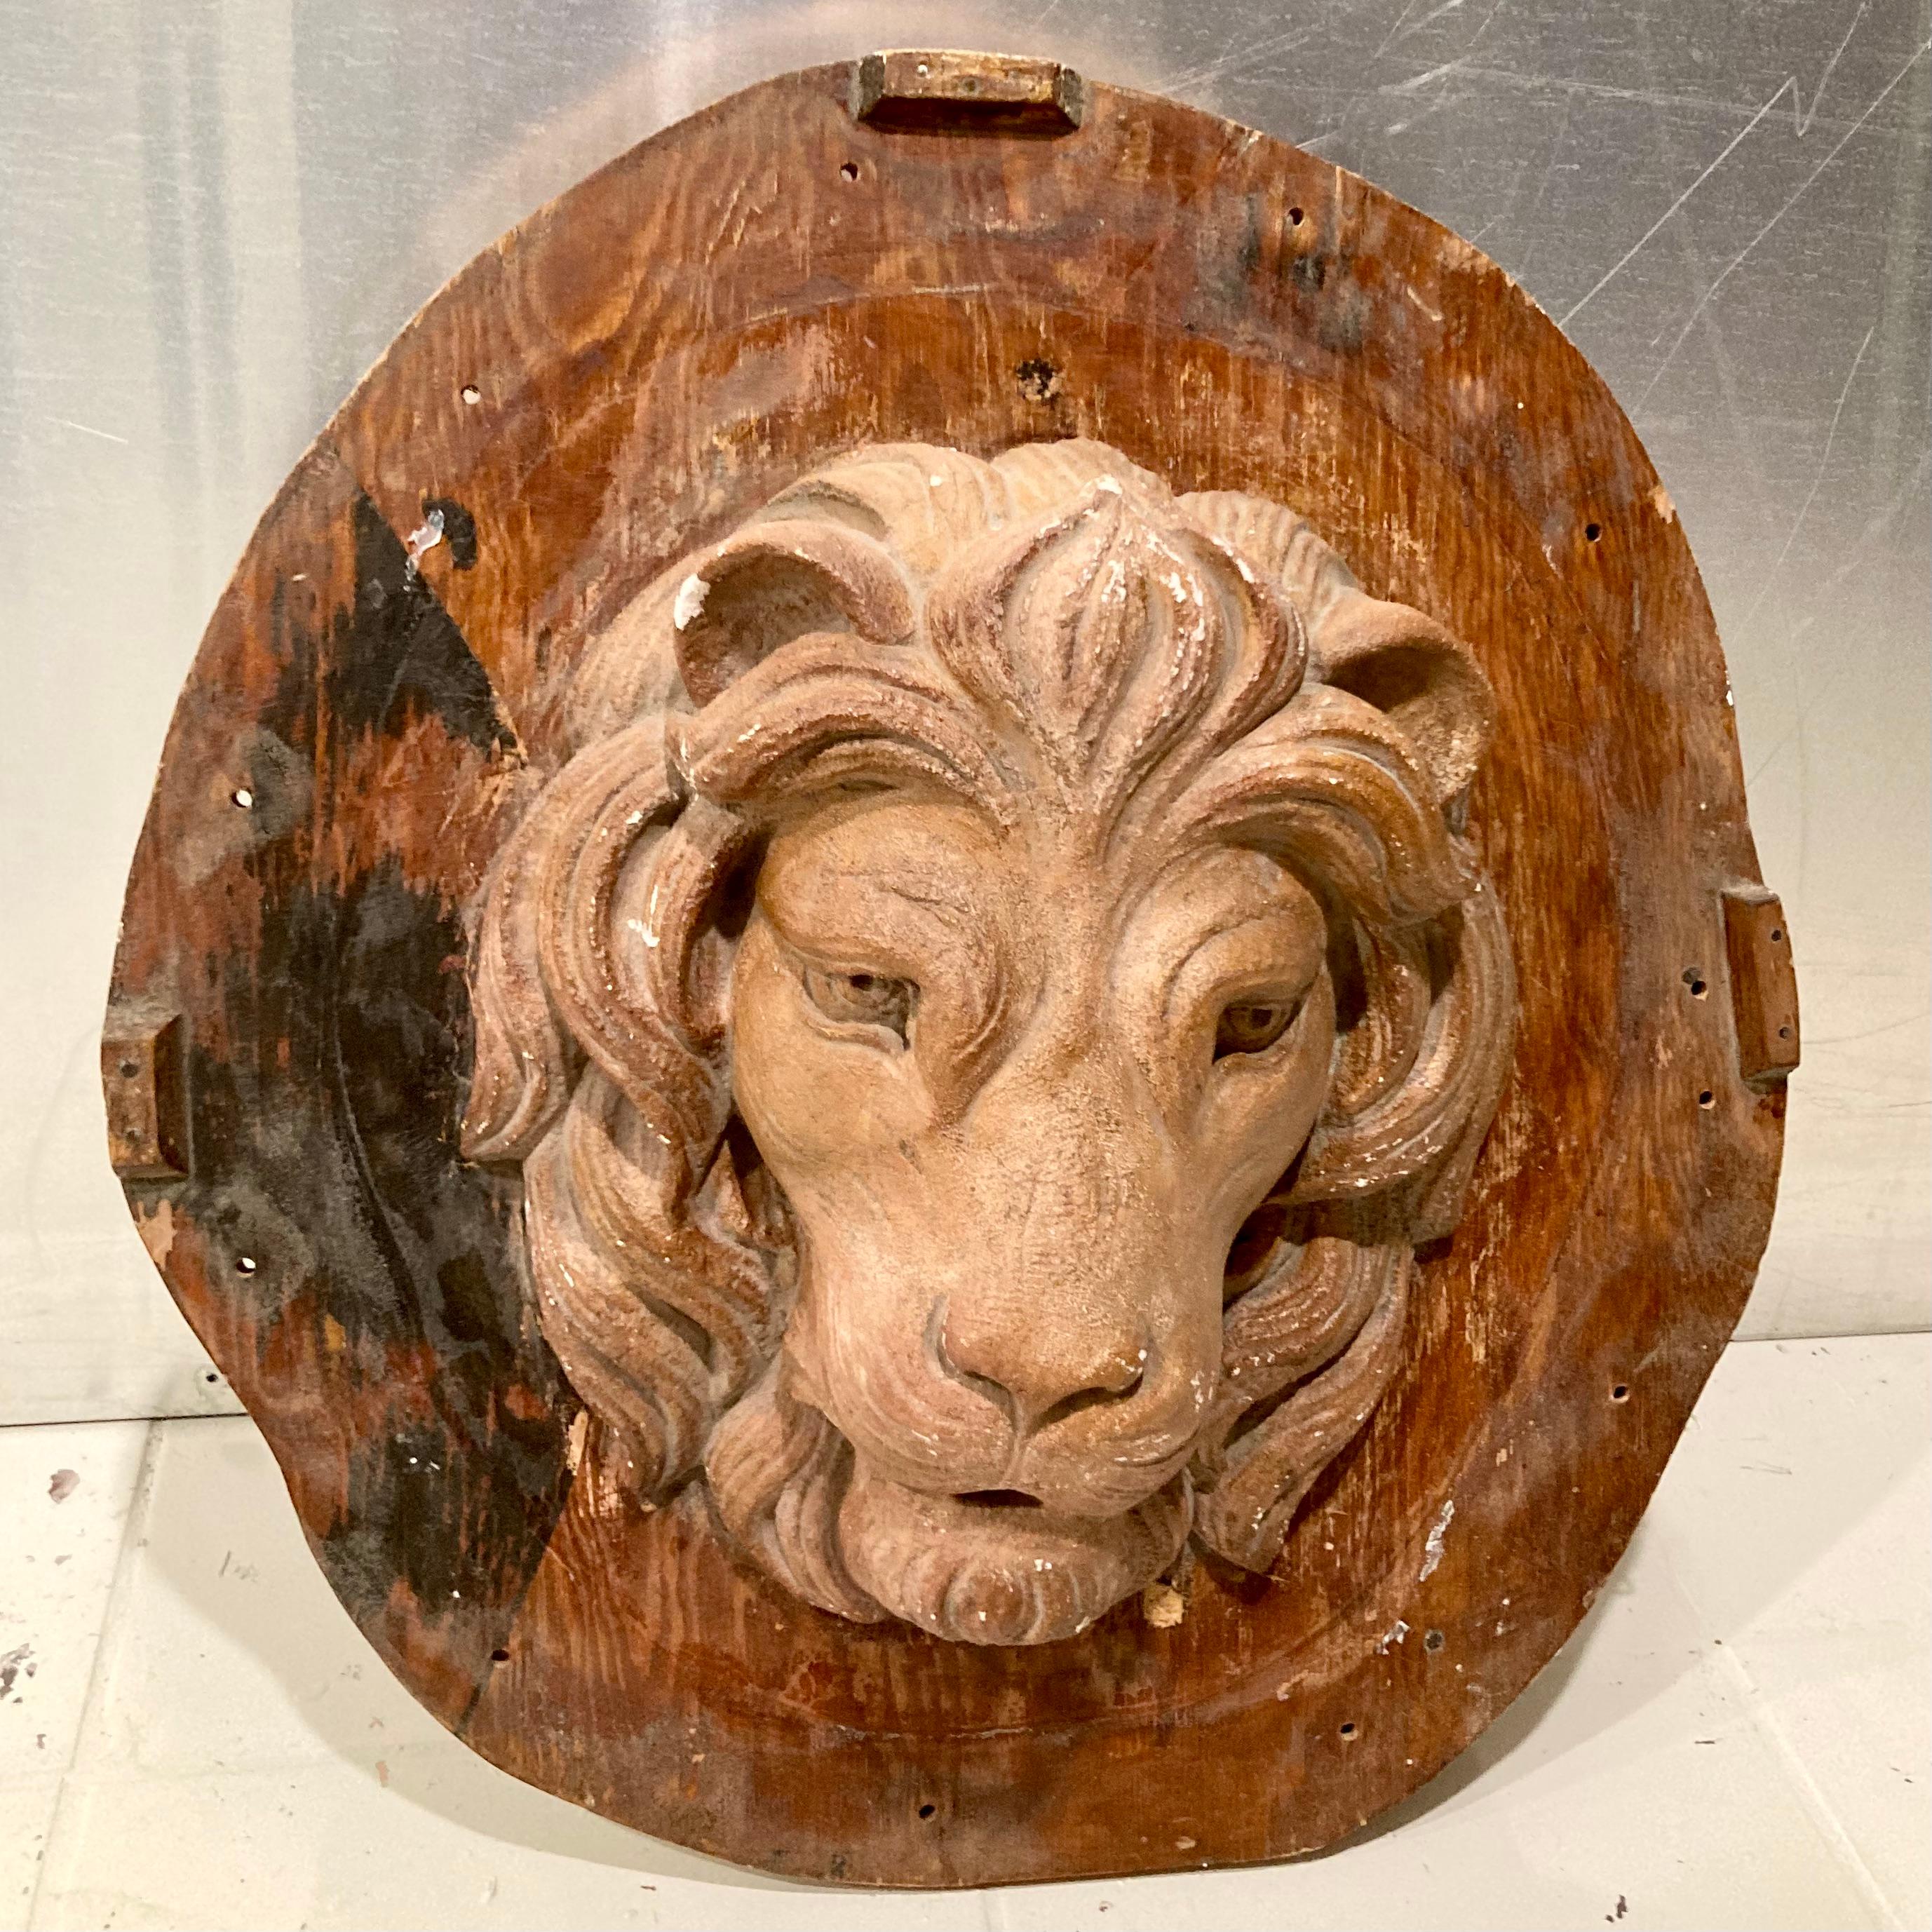 Magnifique pièce du moule de Tony Duquette représentant l'emblématique tête de lion de la MGM. Un excellent complément à votre intérieur et à votre décoration murale, ainsi qu'un fabuleux morceau d'histoire.